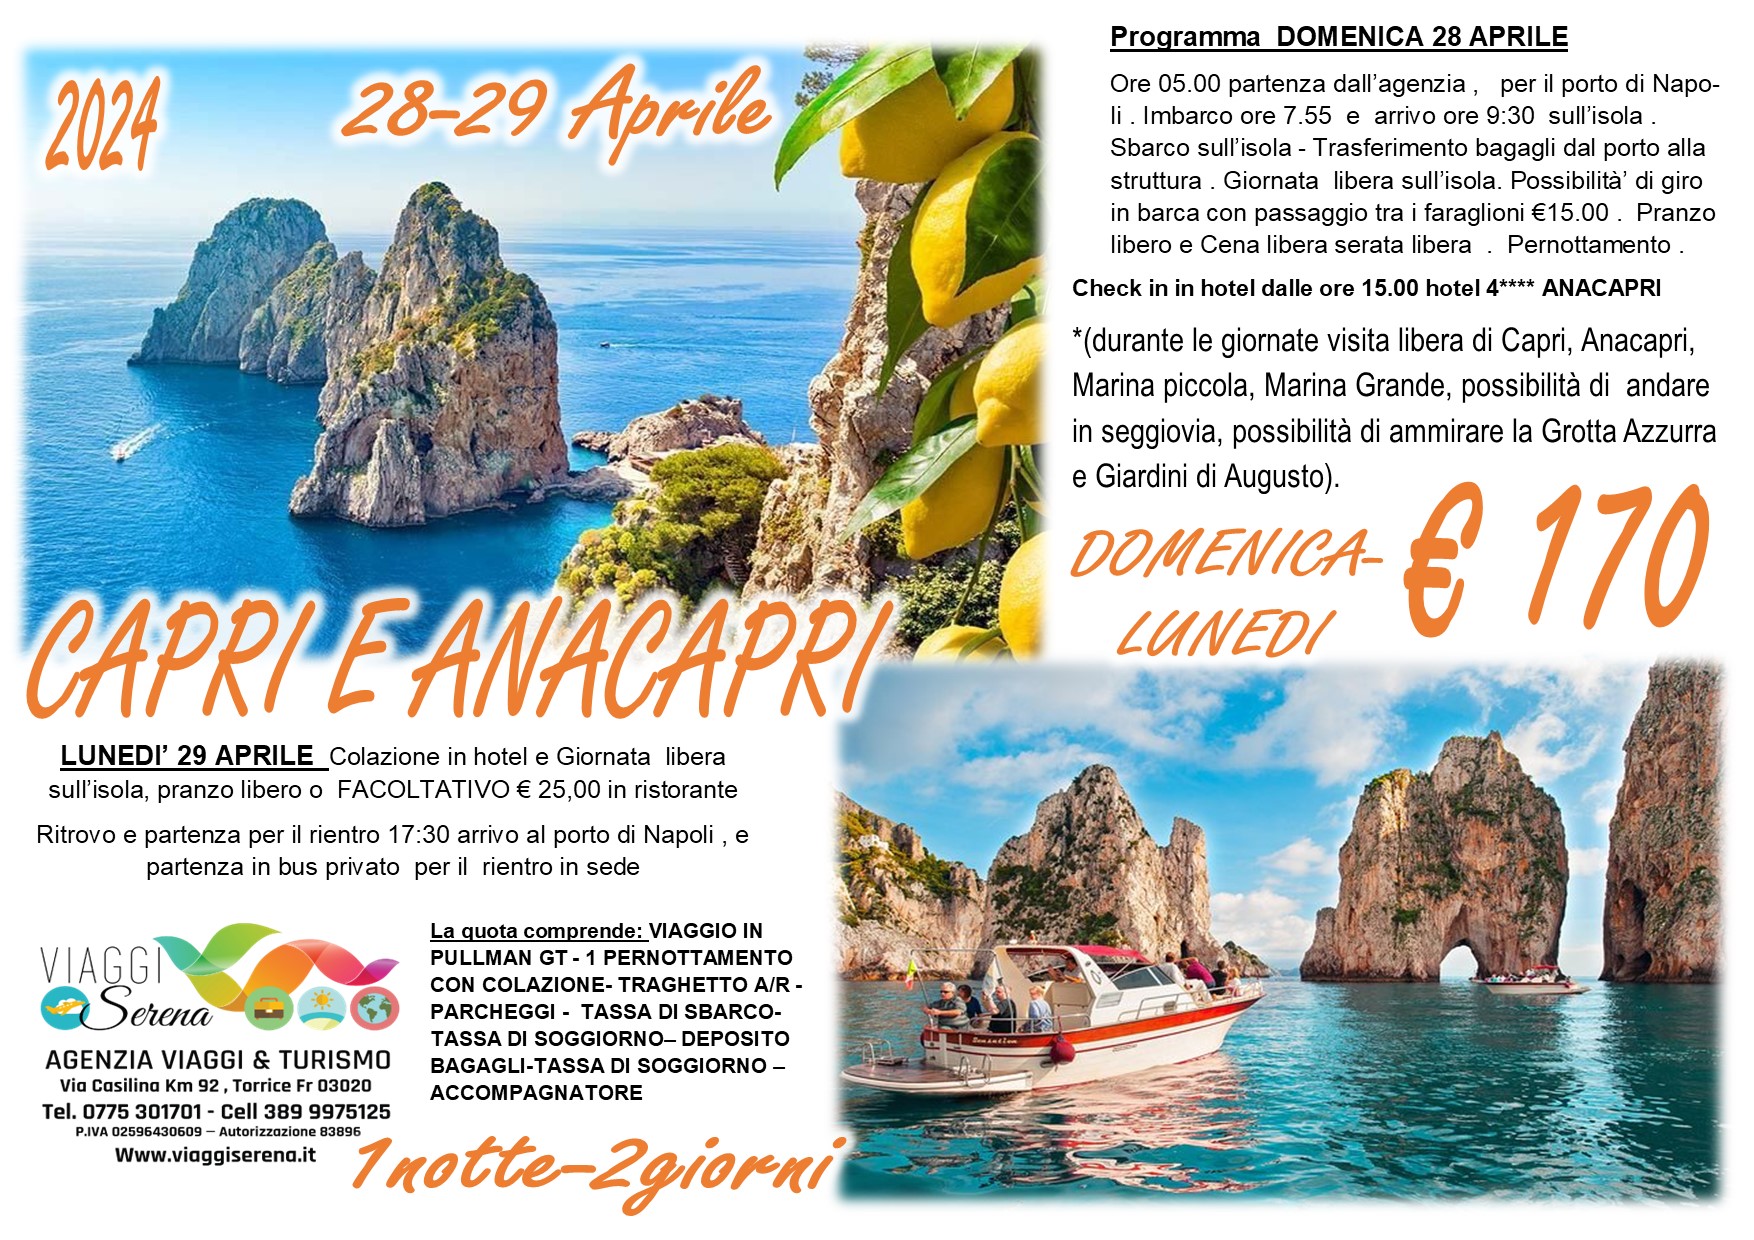 Viaggi di gruppo: Capri e Anacapri 28-29 Aprile €170 “Domenica & Lunedi'”